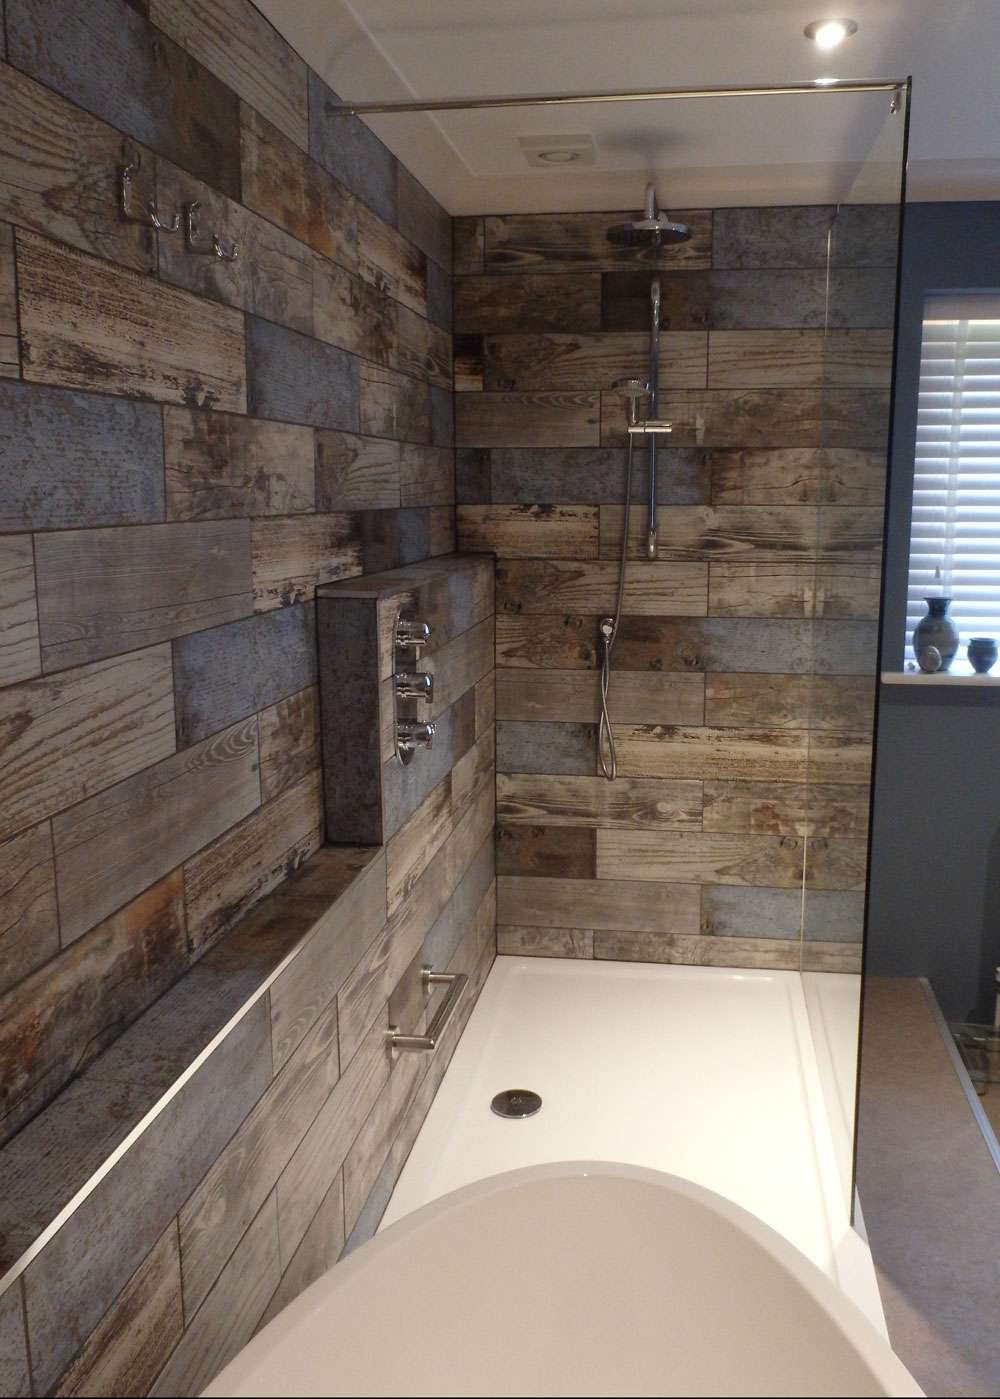 Barnwood Tile Bathroom
 Reclaimed Wood Rachel s Bathroom Transformation Walls